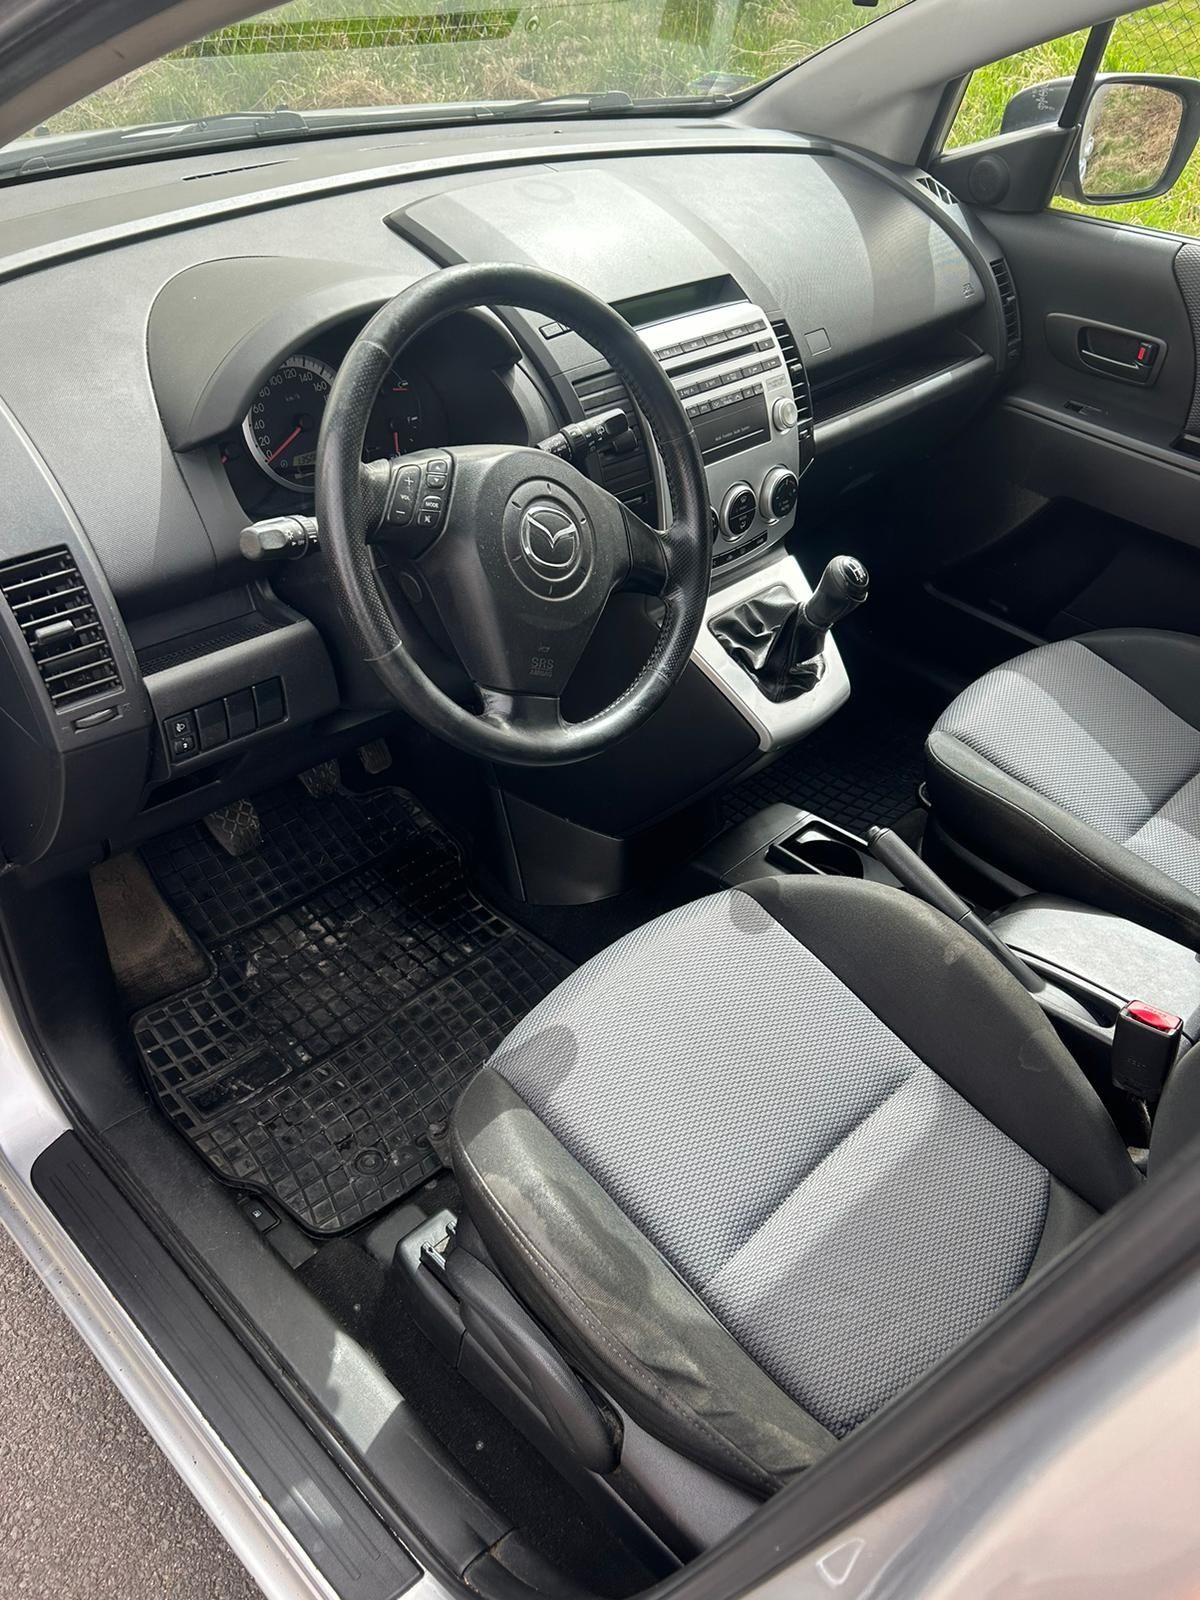 Mazda 5 7 osobowa , ładna , alufelgi , klima , opłacona